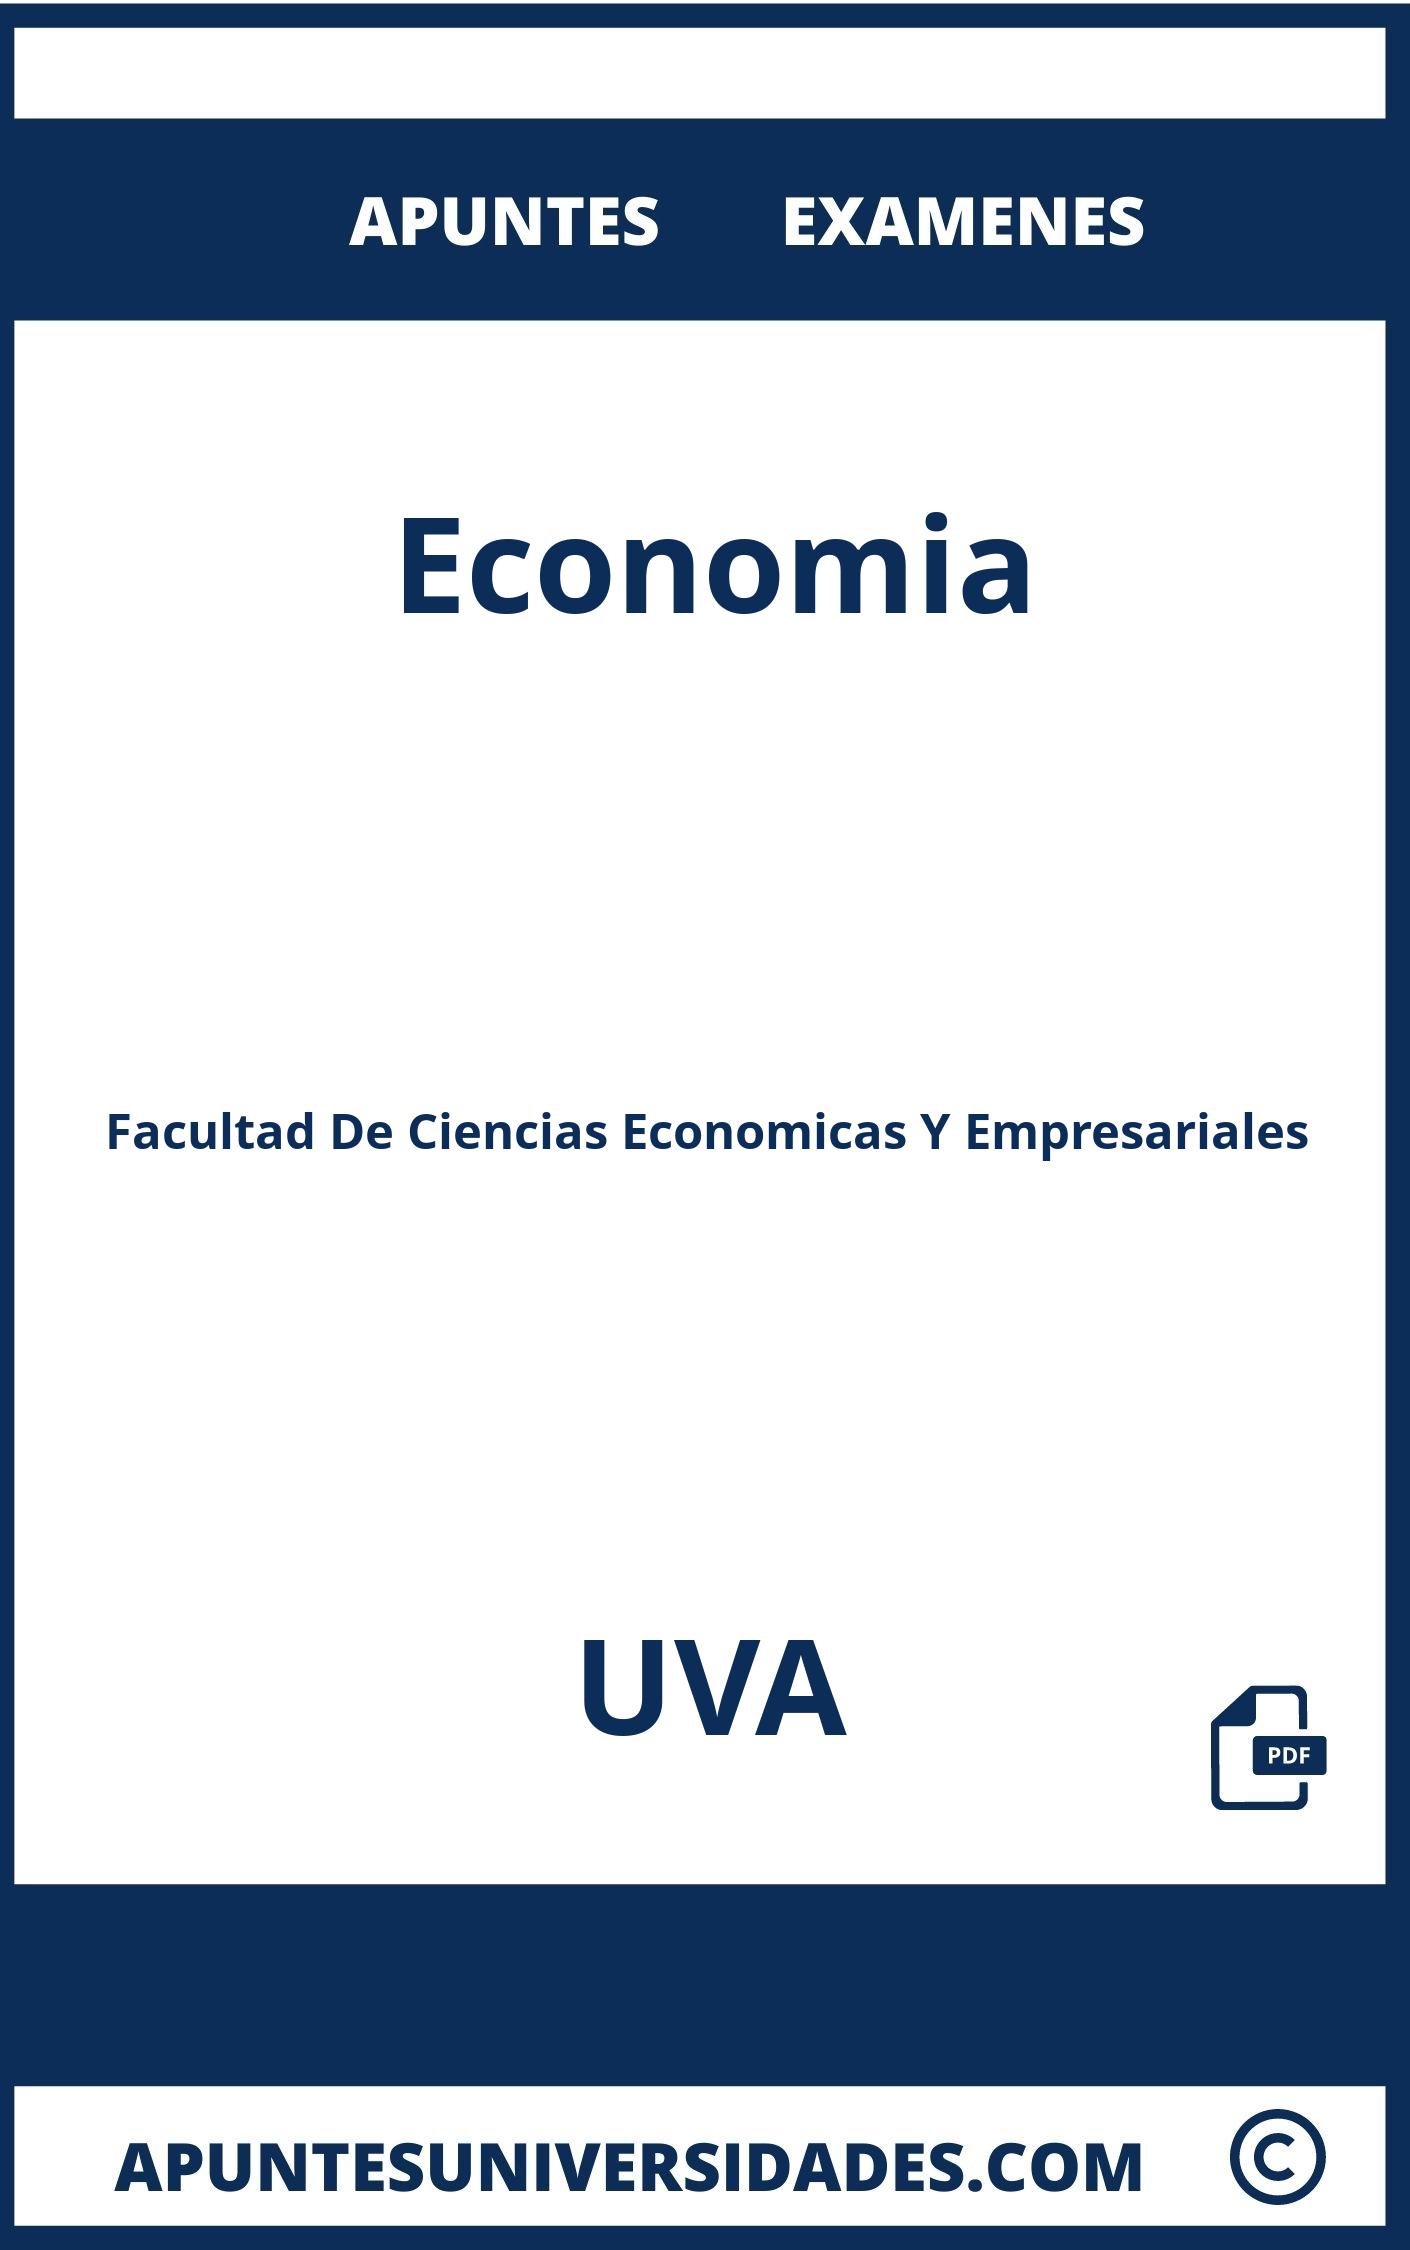 Examenes y Apuntes Economia UVA